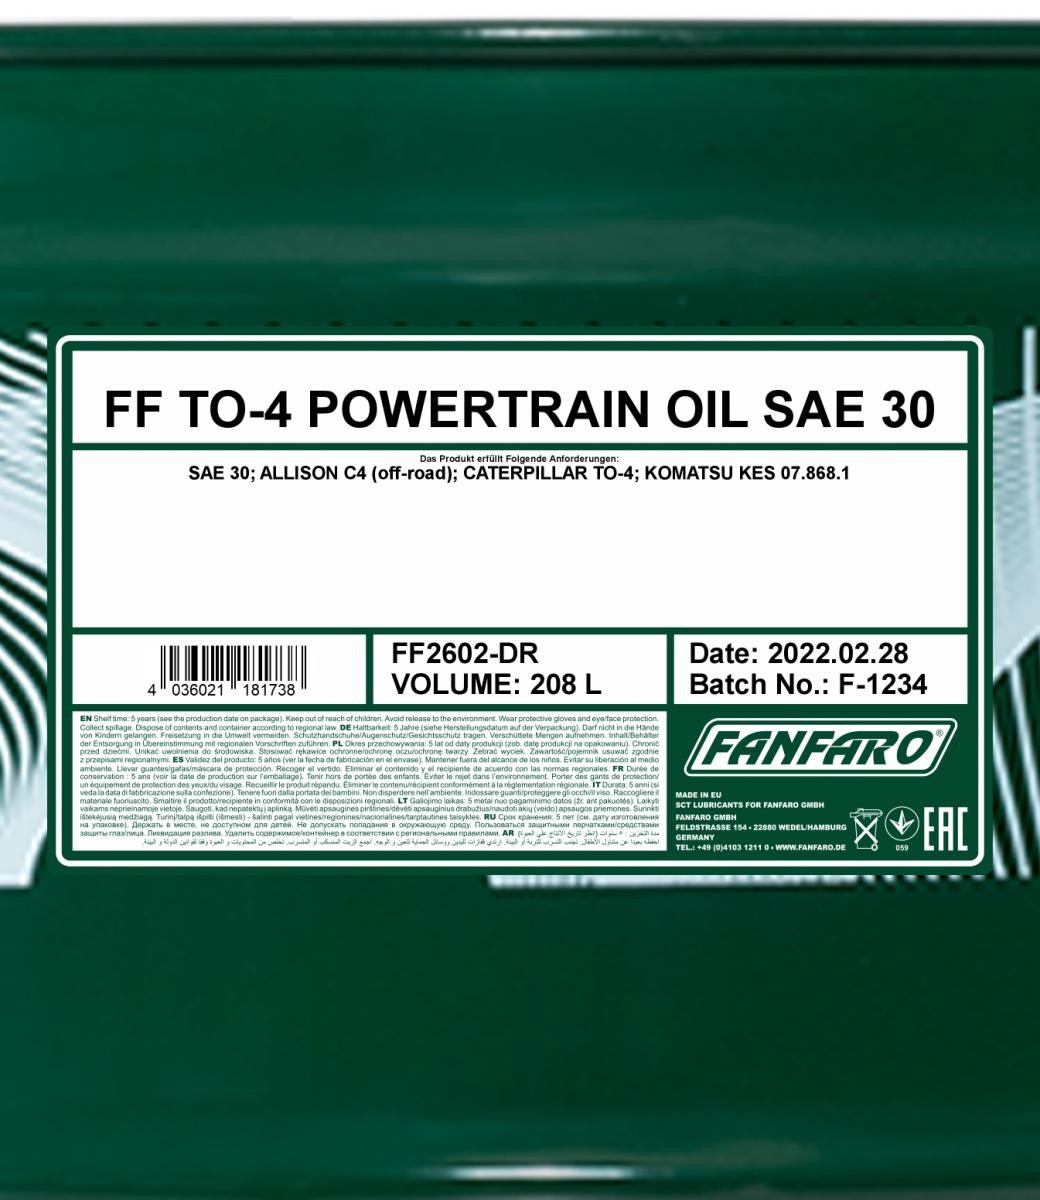 FANFARO Transmission oil FF2602-DR